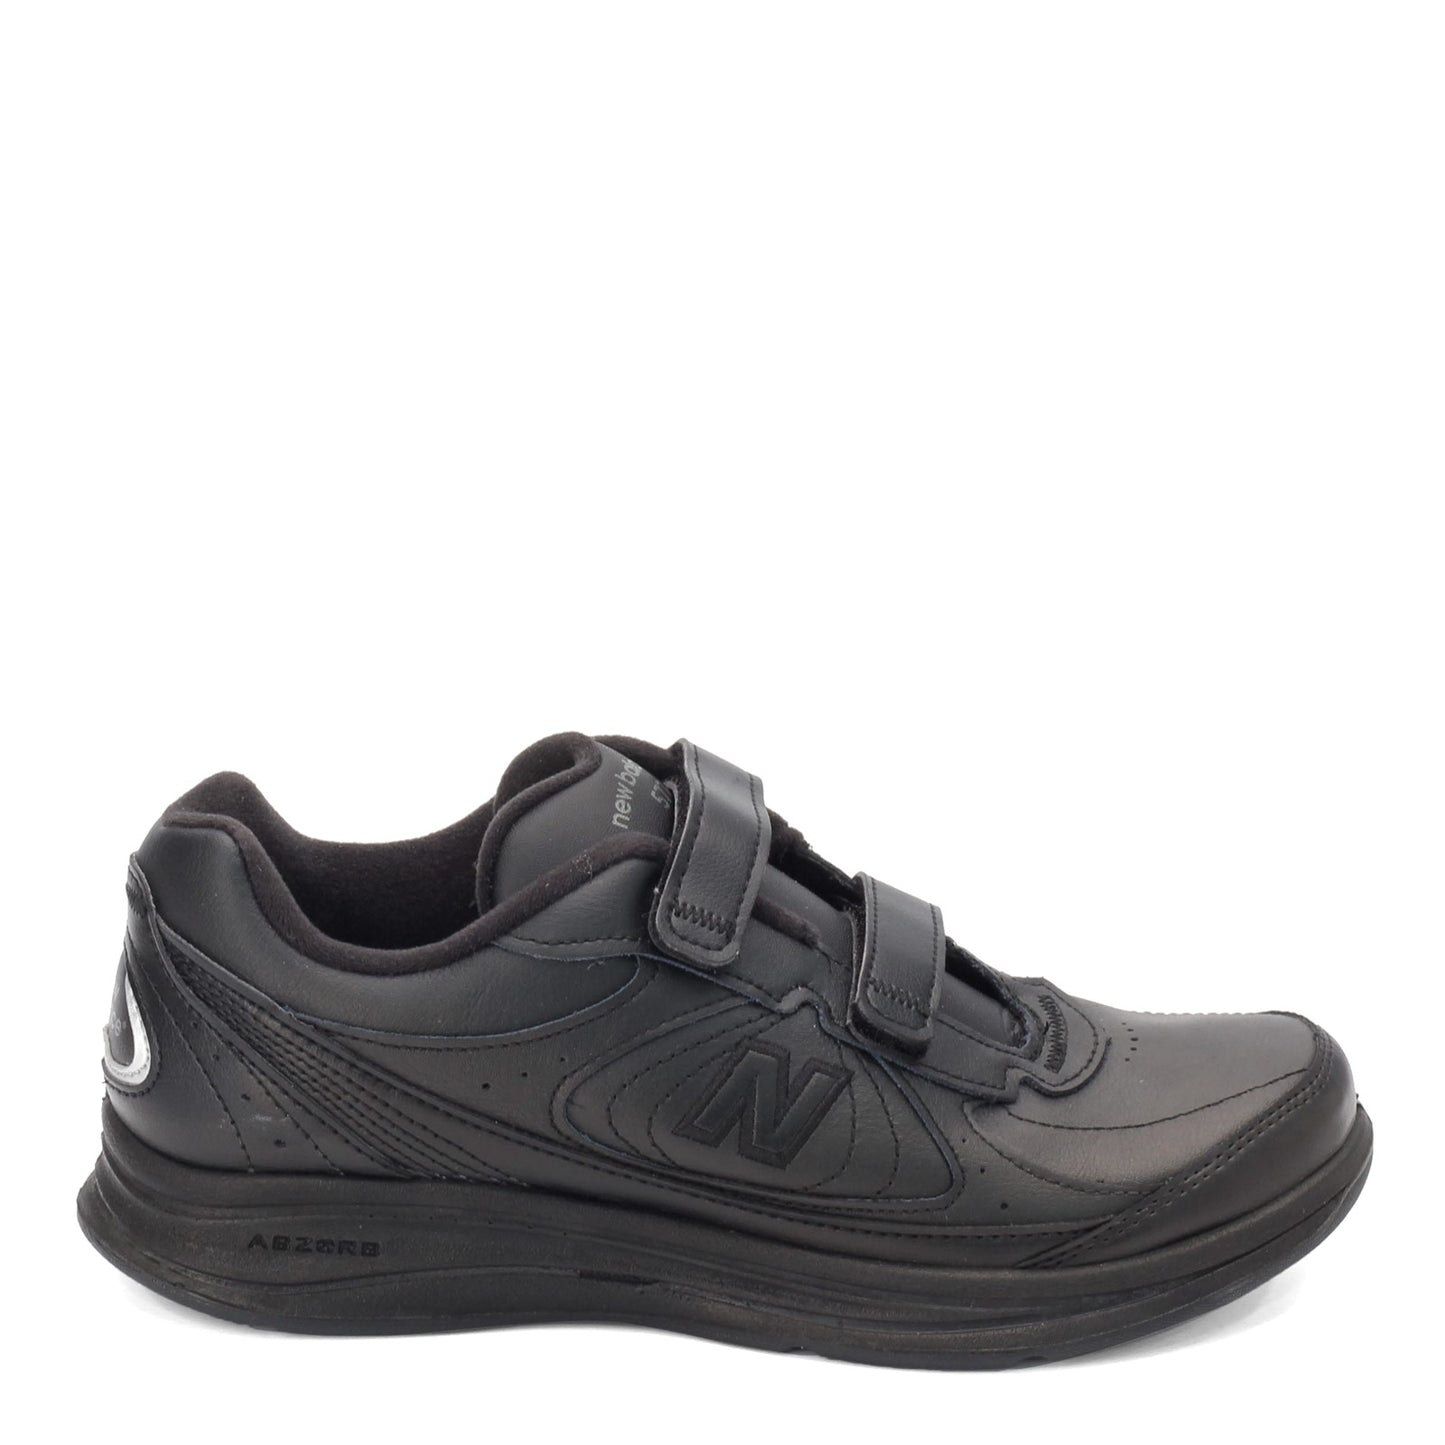 Peltz Shoes  Men's New Balance MW577 Strap Walking Shoe BLACK MW577VK